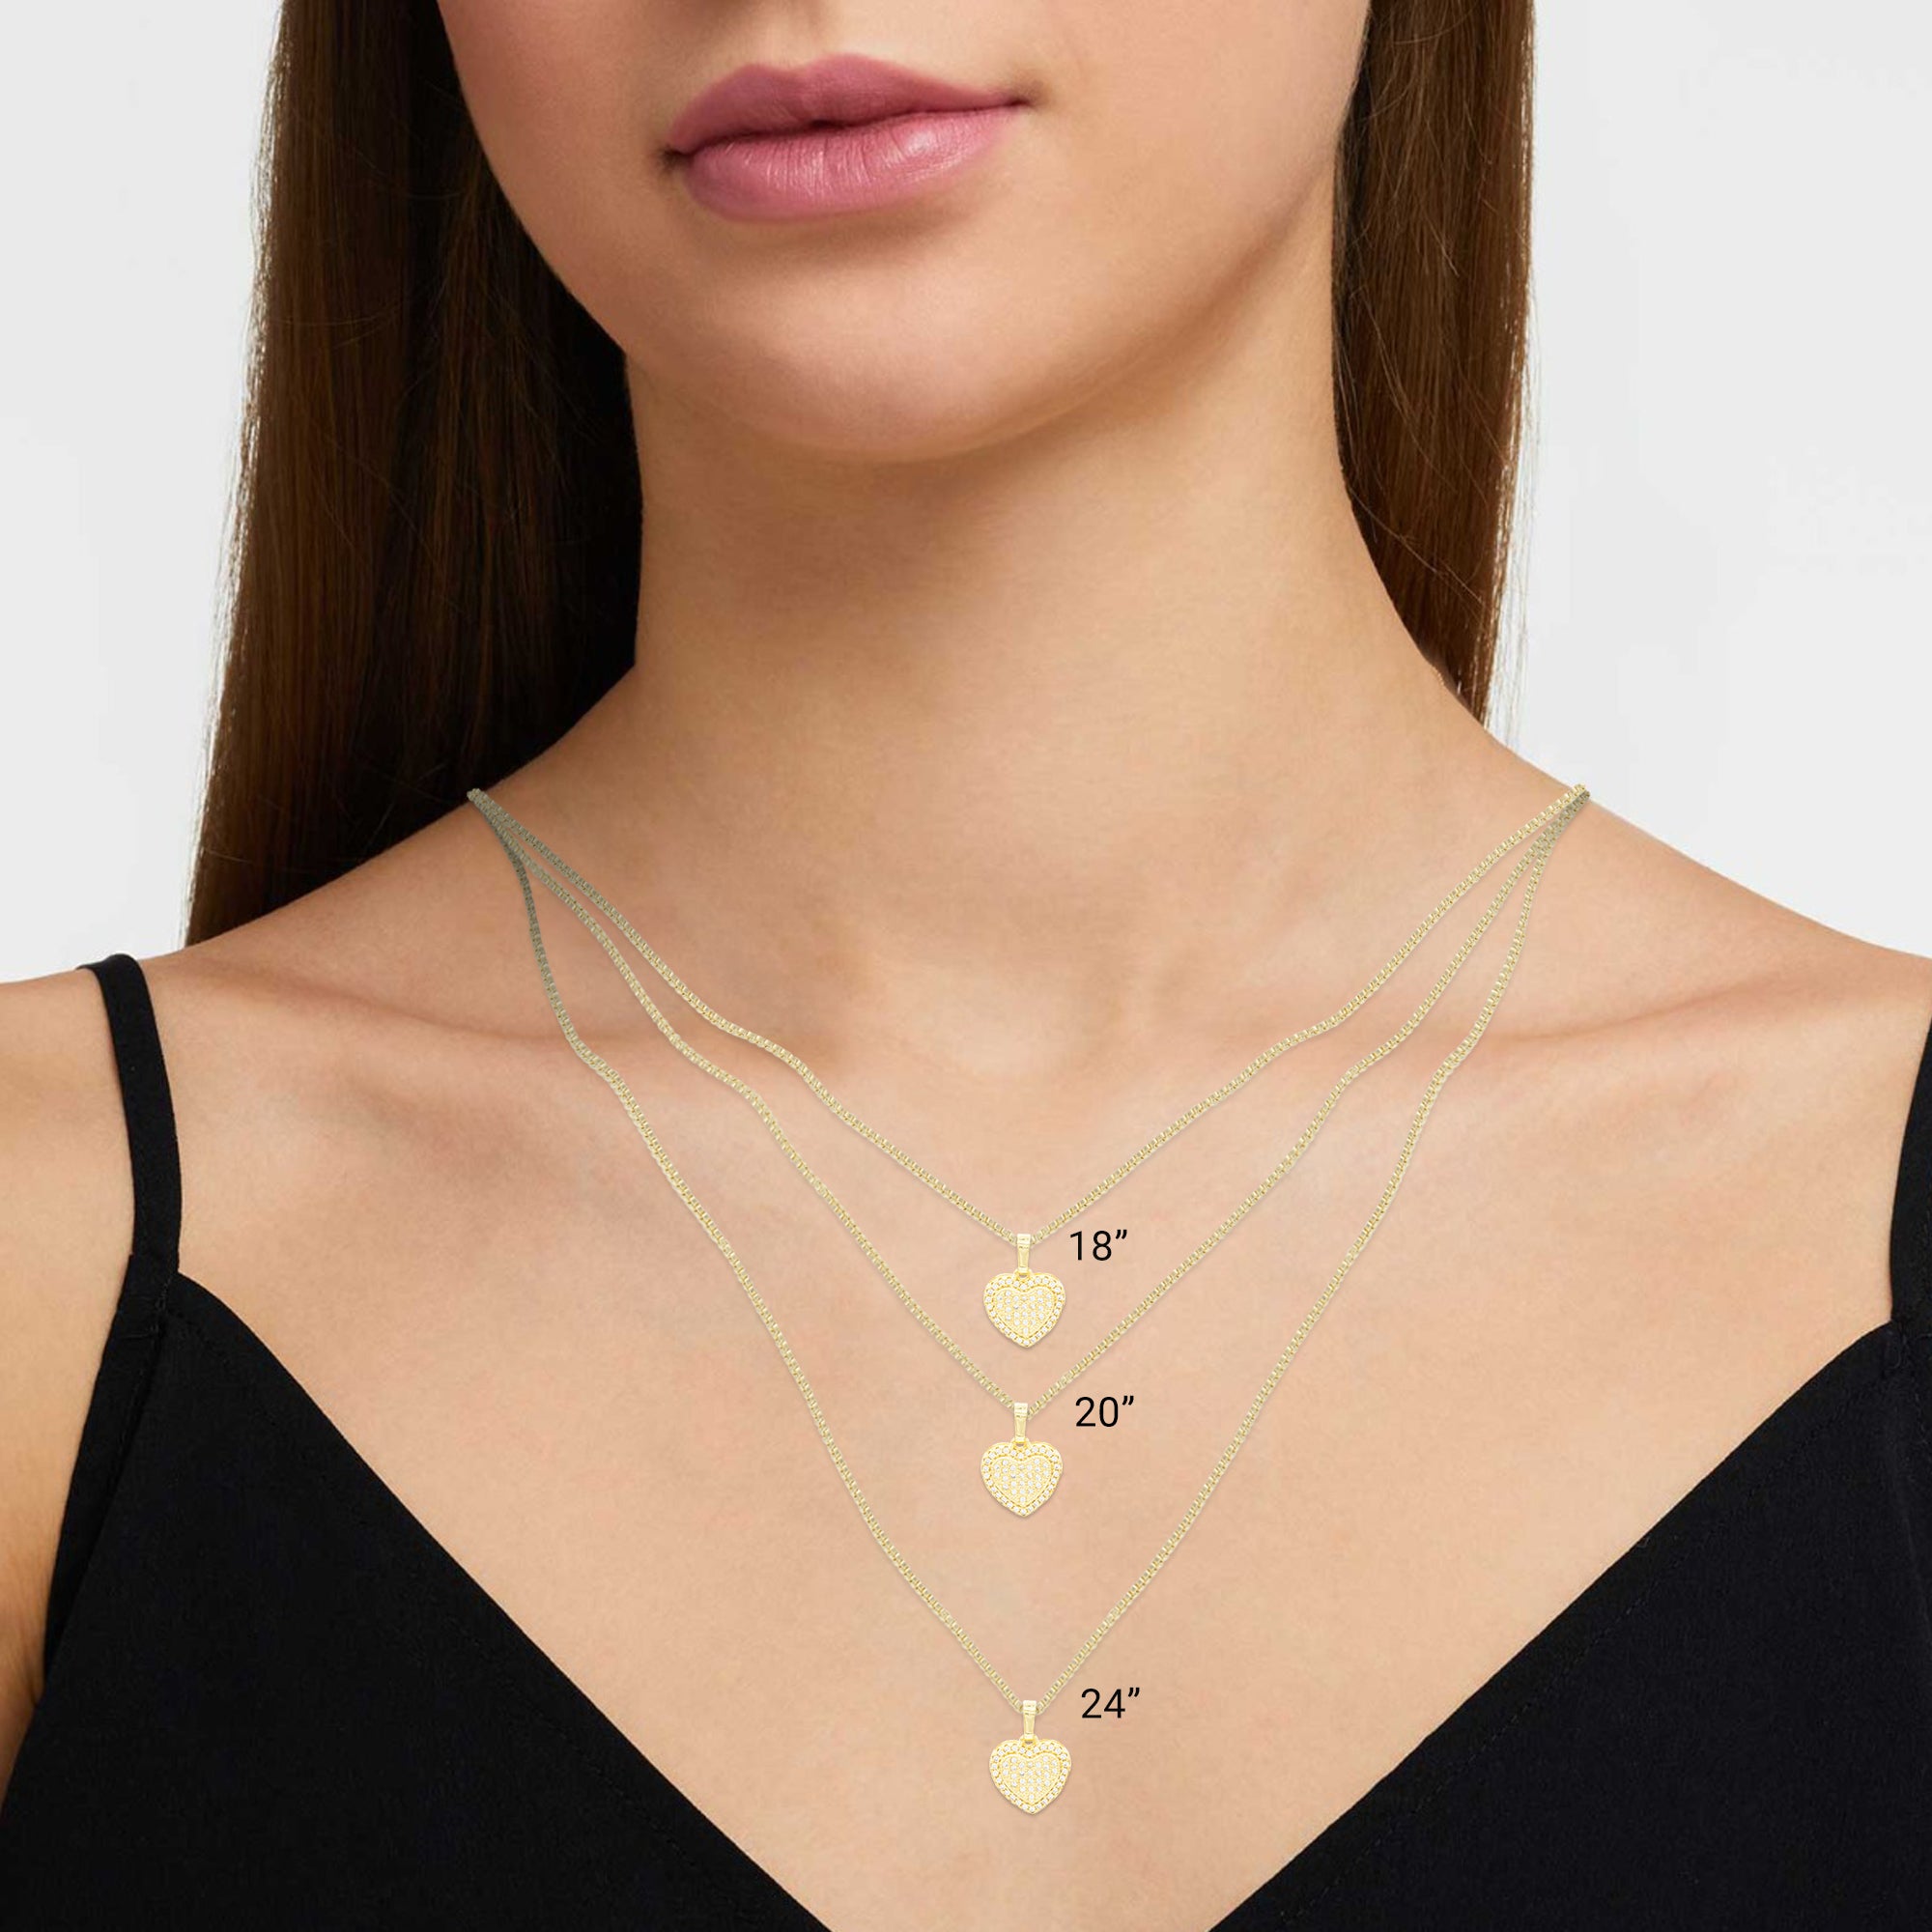 Pendant Necklace Jewelry 